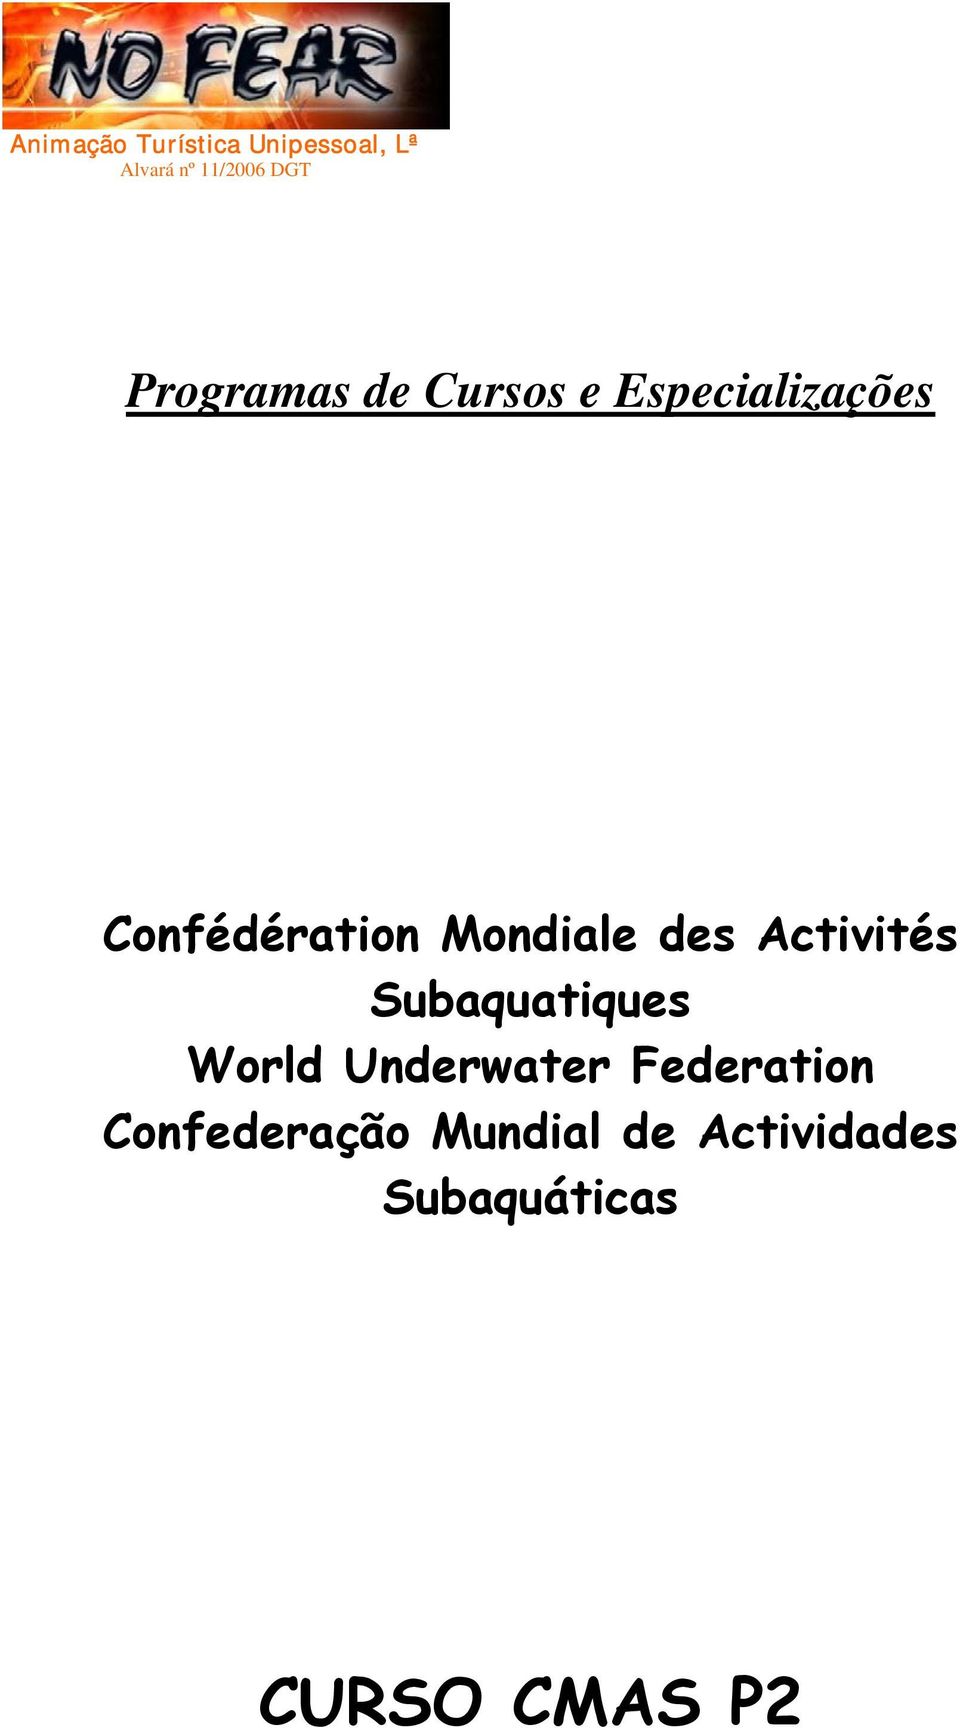 Subaquatiques World Underwater Federation